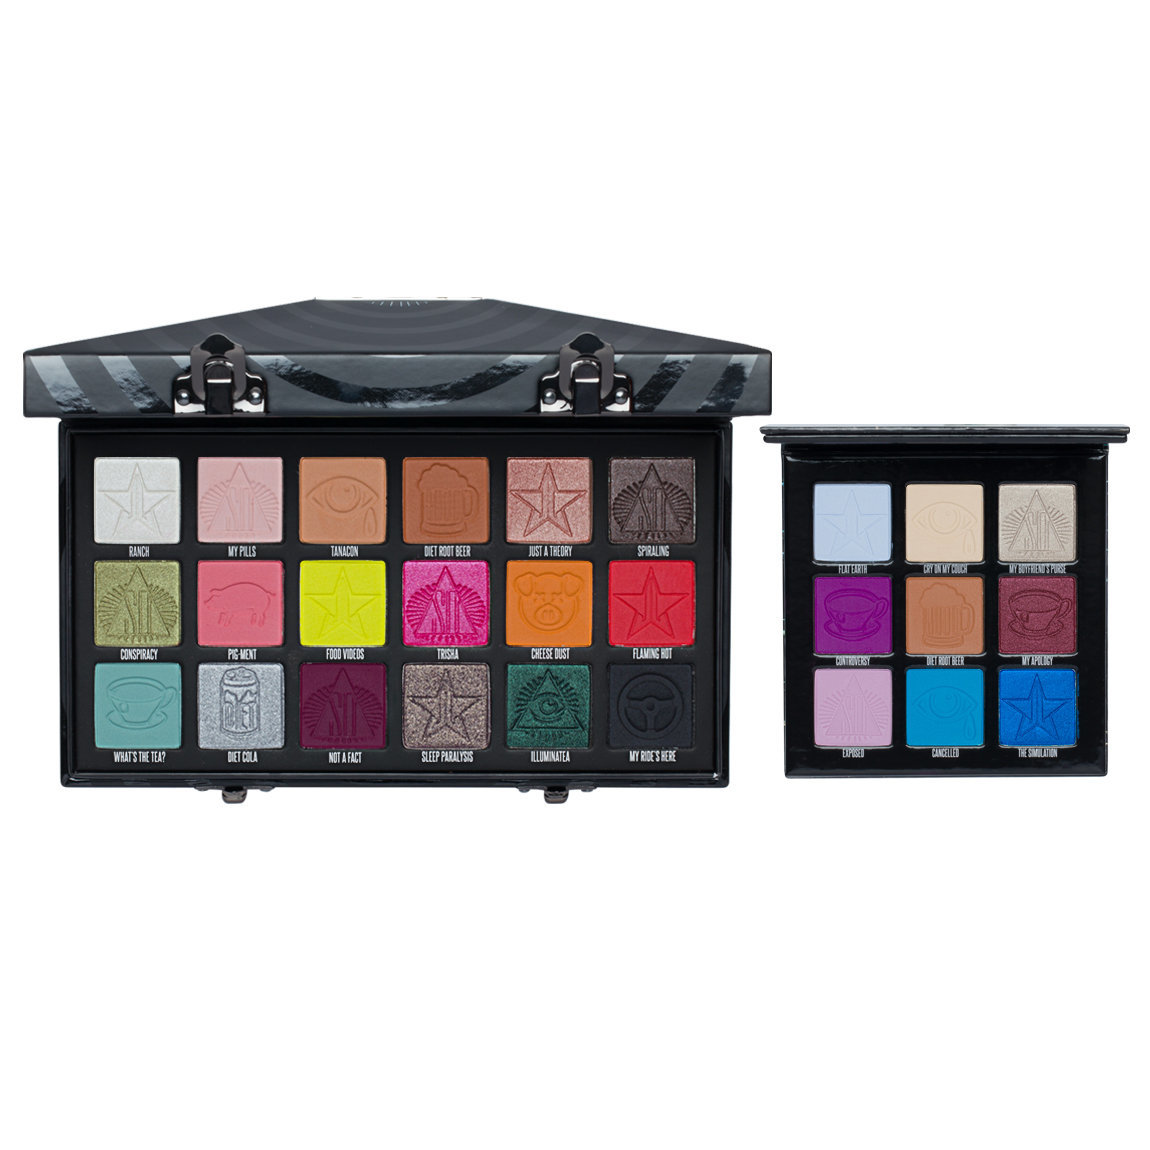 Jeffree Star Cosmetics Conspiracy & Mini Controversy Palette Bundle | Beautylish1150 x 1150